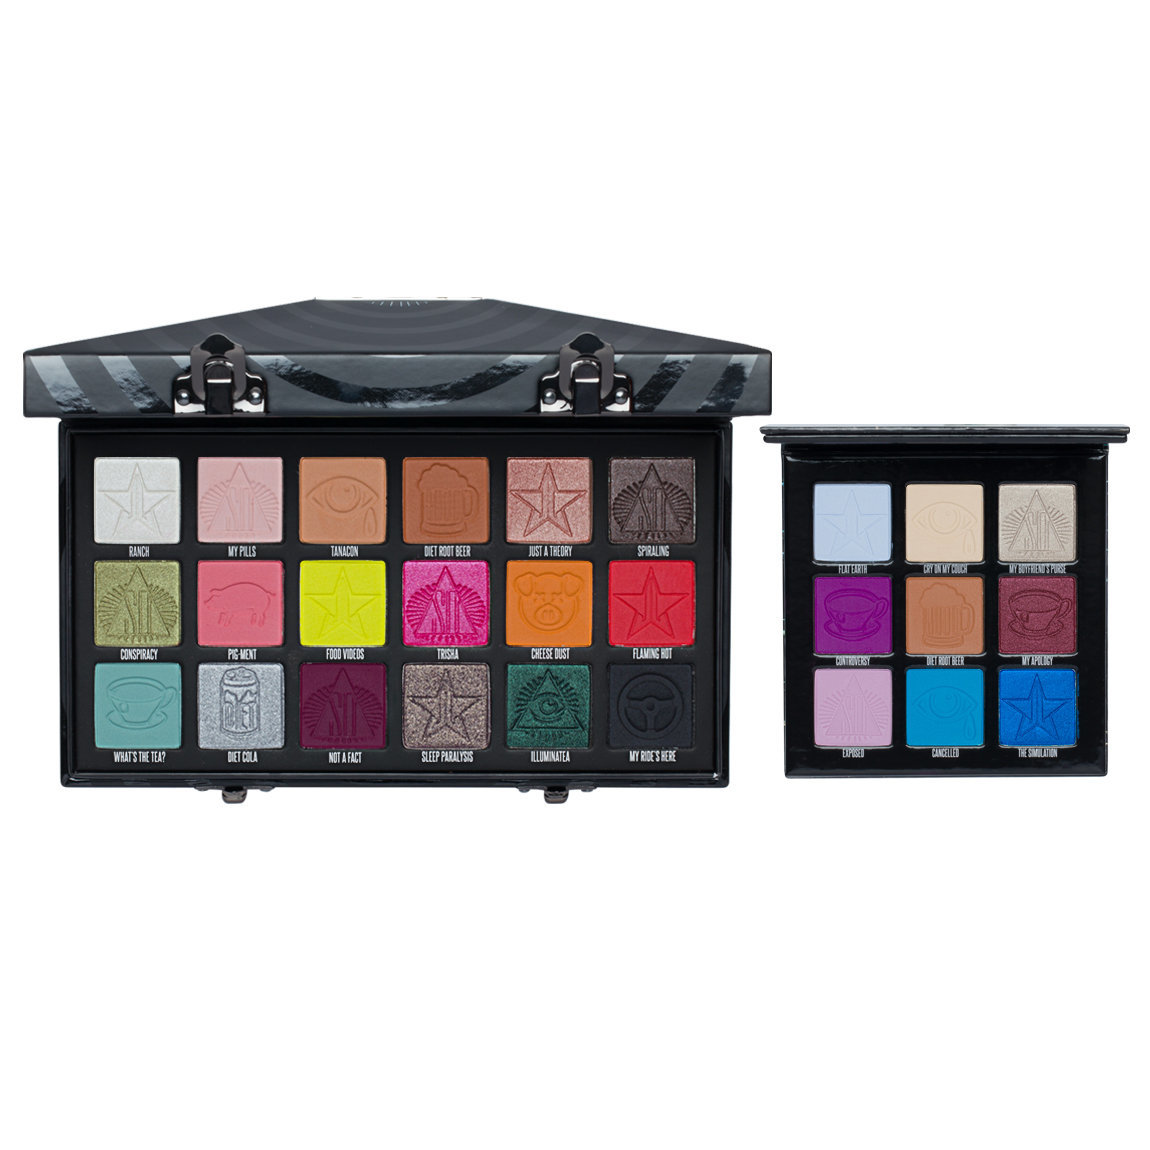 Jeffree Star Cosmetics Conspiracy & Mini Controversy Palette Bundle | Beautylish1150 x 1150